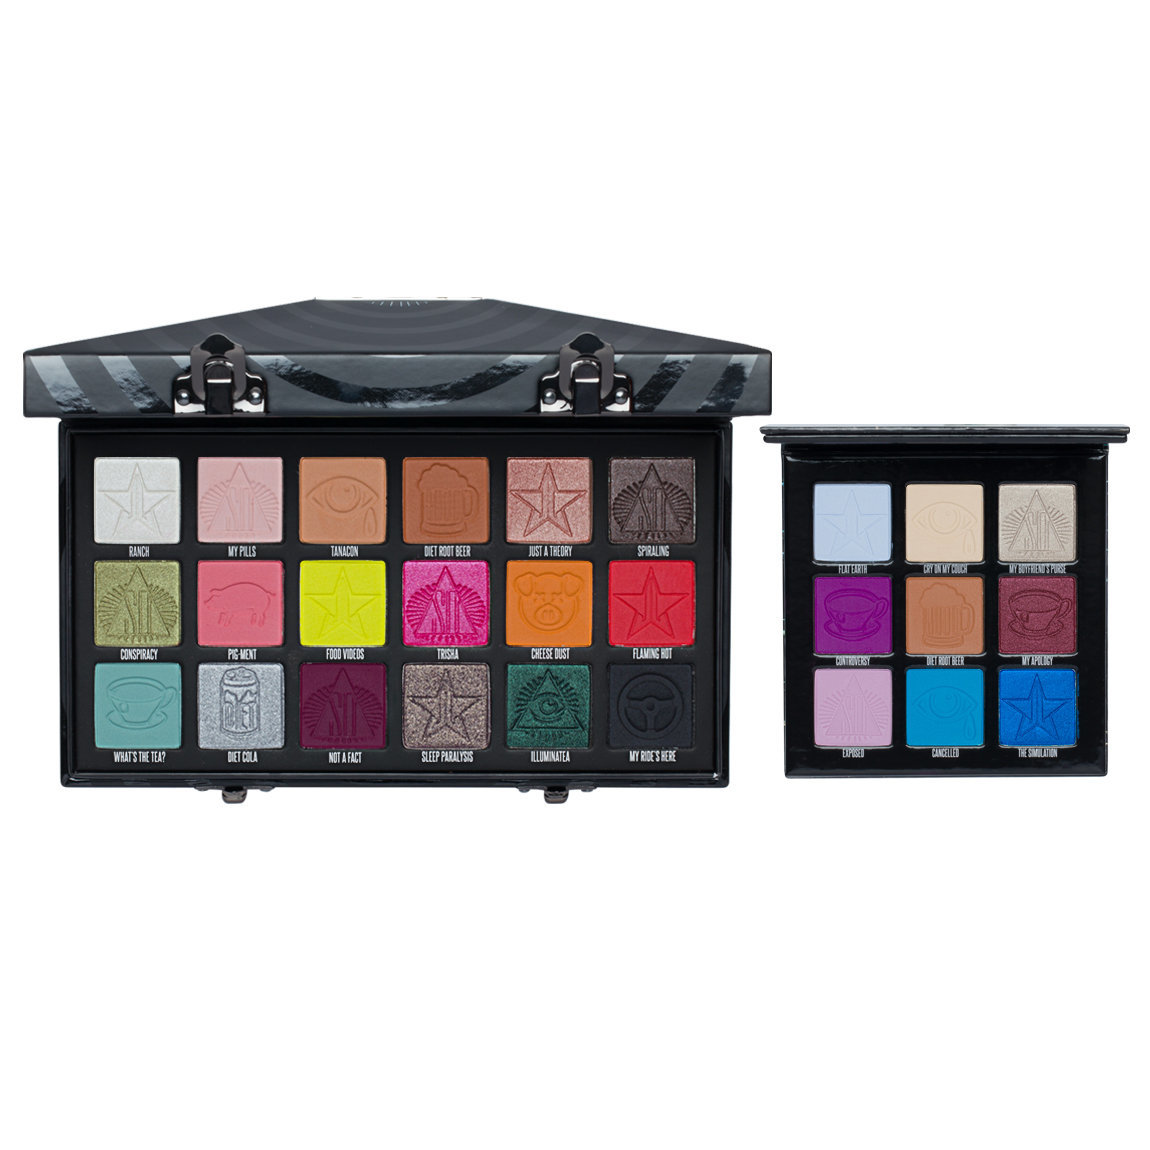 Jeffree Star Cosmetics Conspiracy & Mini Controversy Palette Bundle | Beautylish1150 x 1150